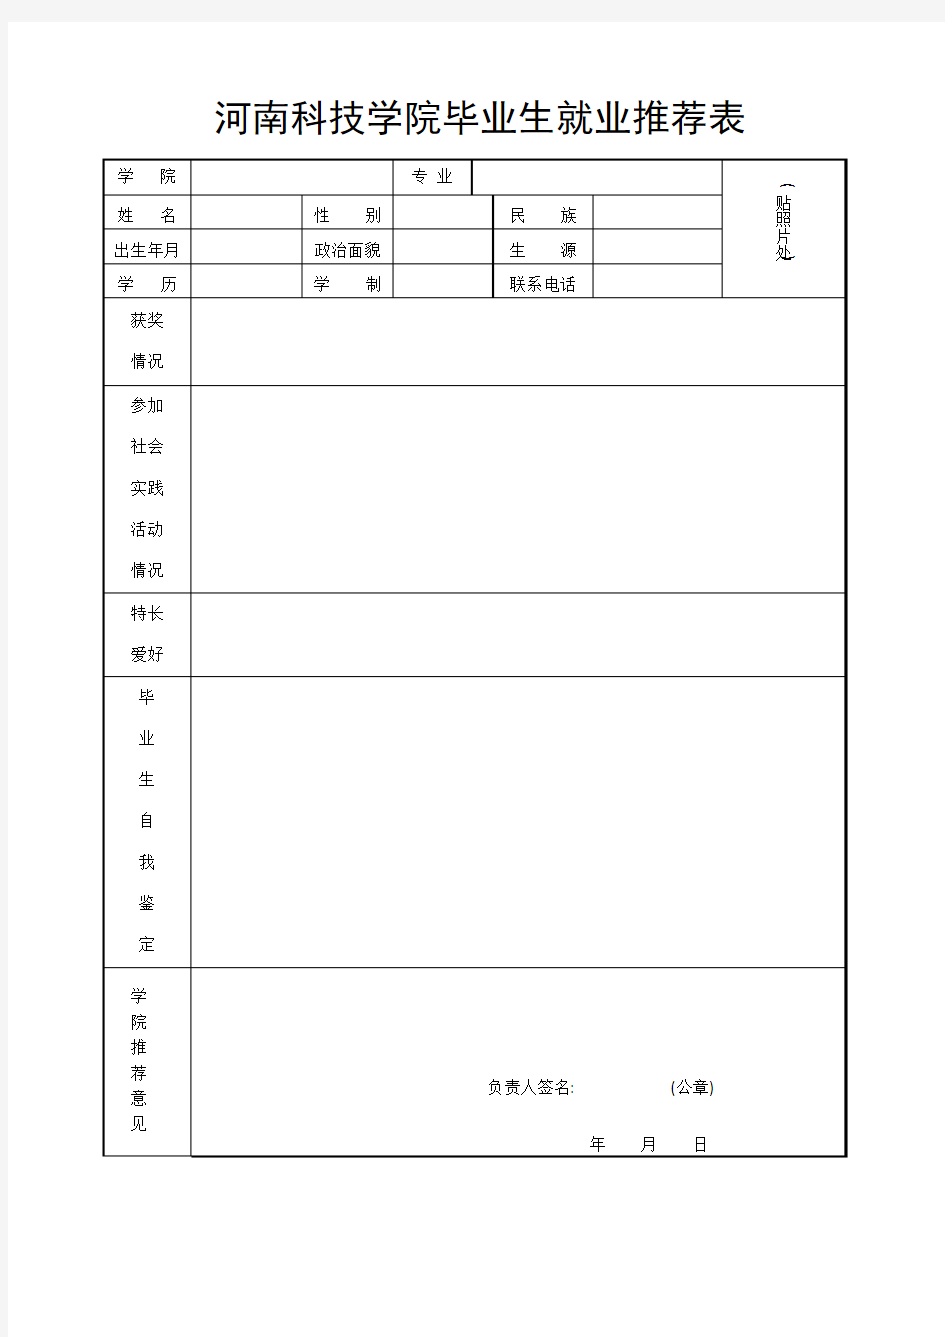 河南科技学院毕业生就业推荐表